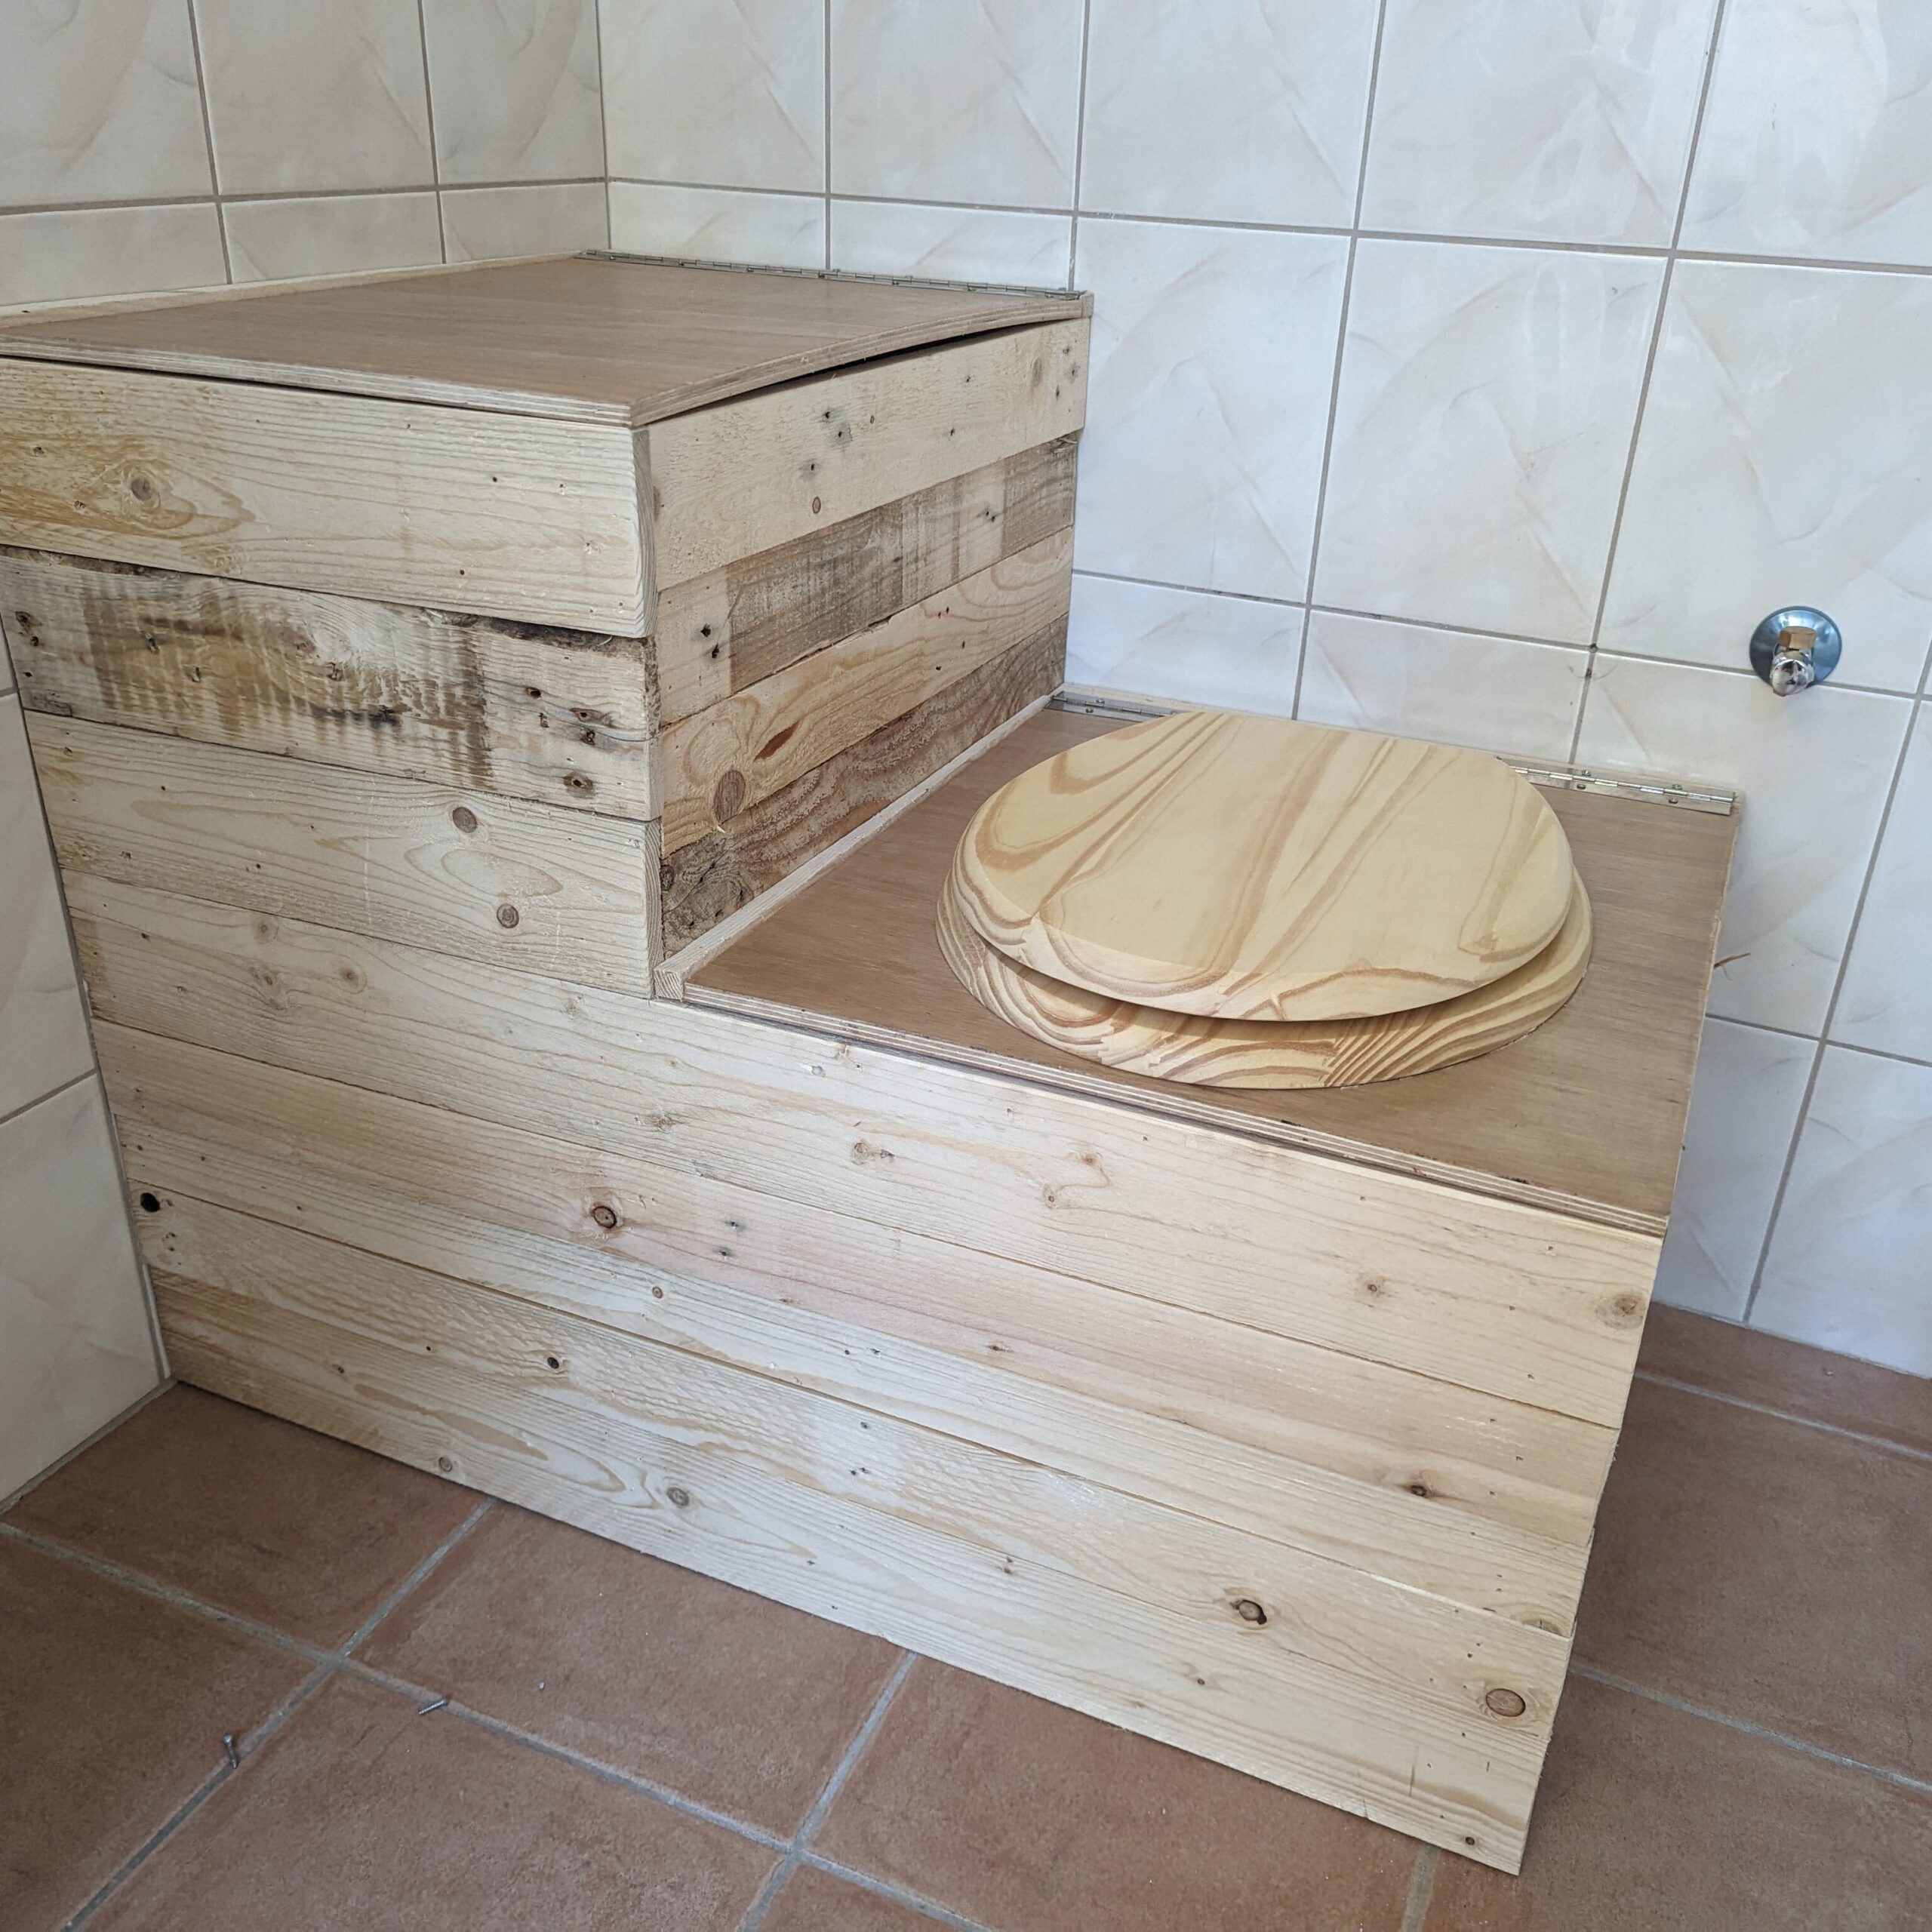 Toilette sèche en bois